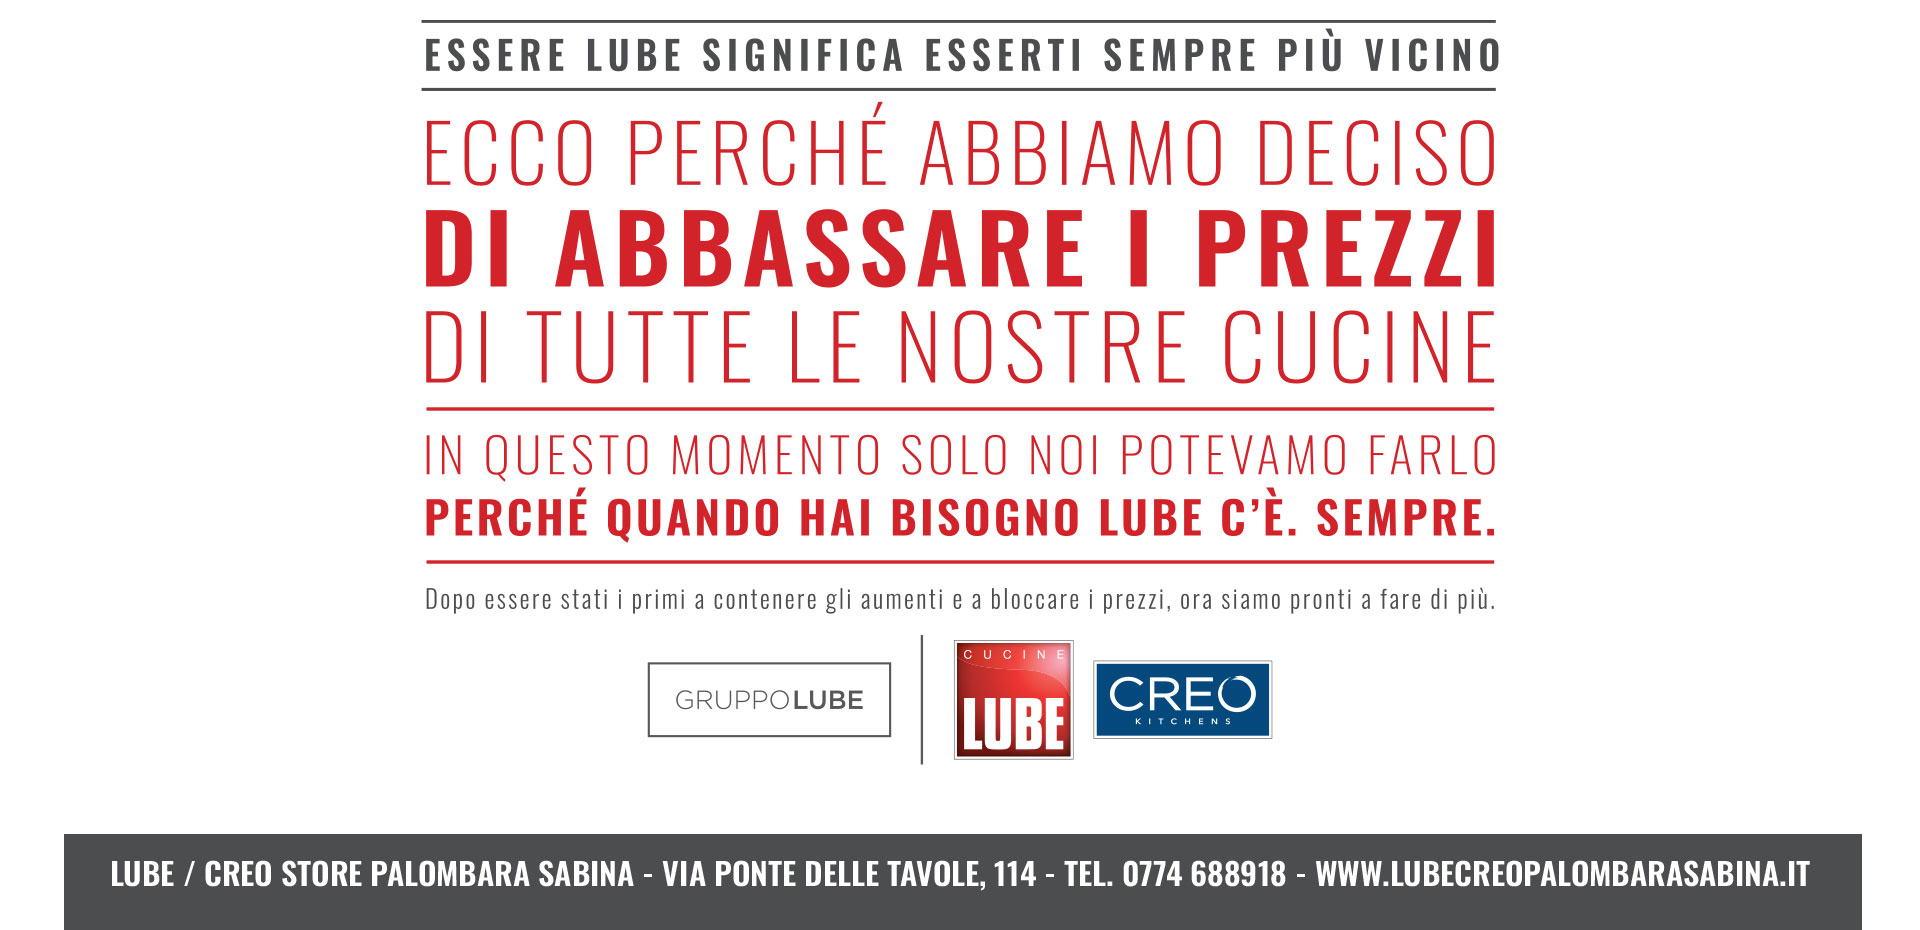 Abbiamo deciso di abbassare i prezzi! Approfitta della promozione Cucine LUBE e CREO Kitchens! - LUBE CREO Palombara Sabina (Roma)